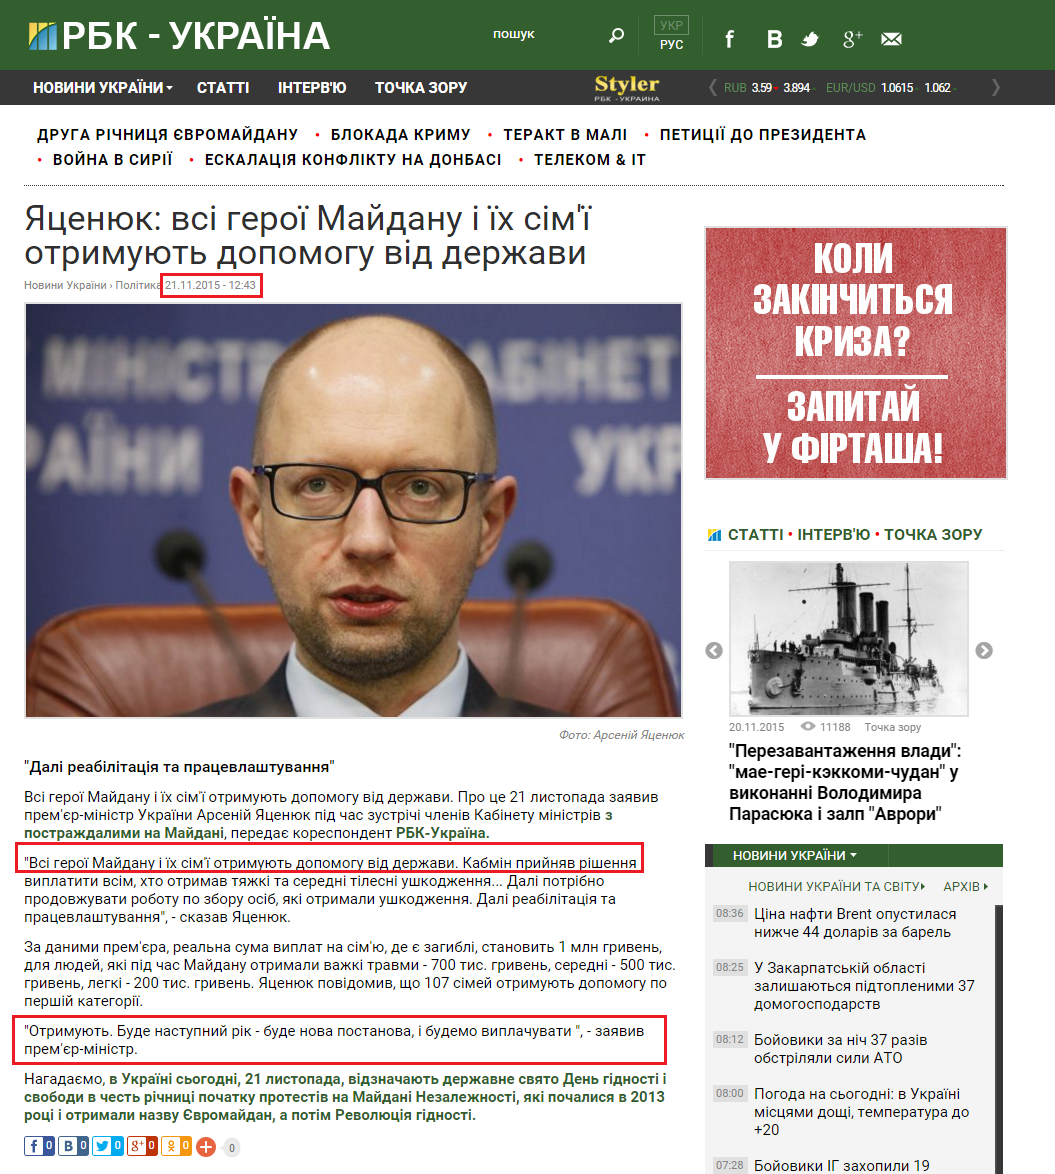 http://www.rbc.ua/ukr/news/tsenyuk-geroi-maydana-semi-poluchayut-pomoshch-1448100466.html